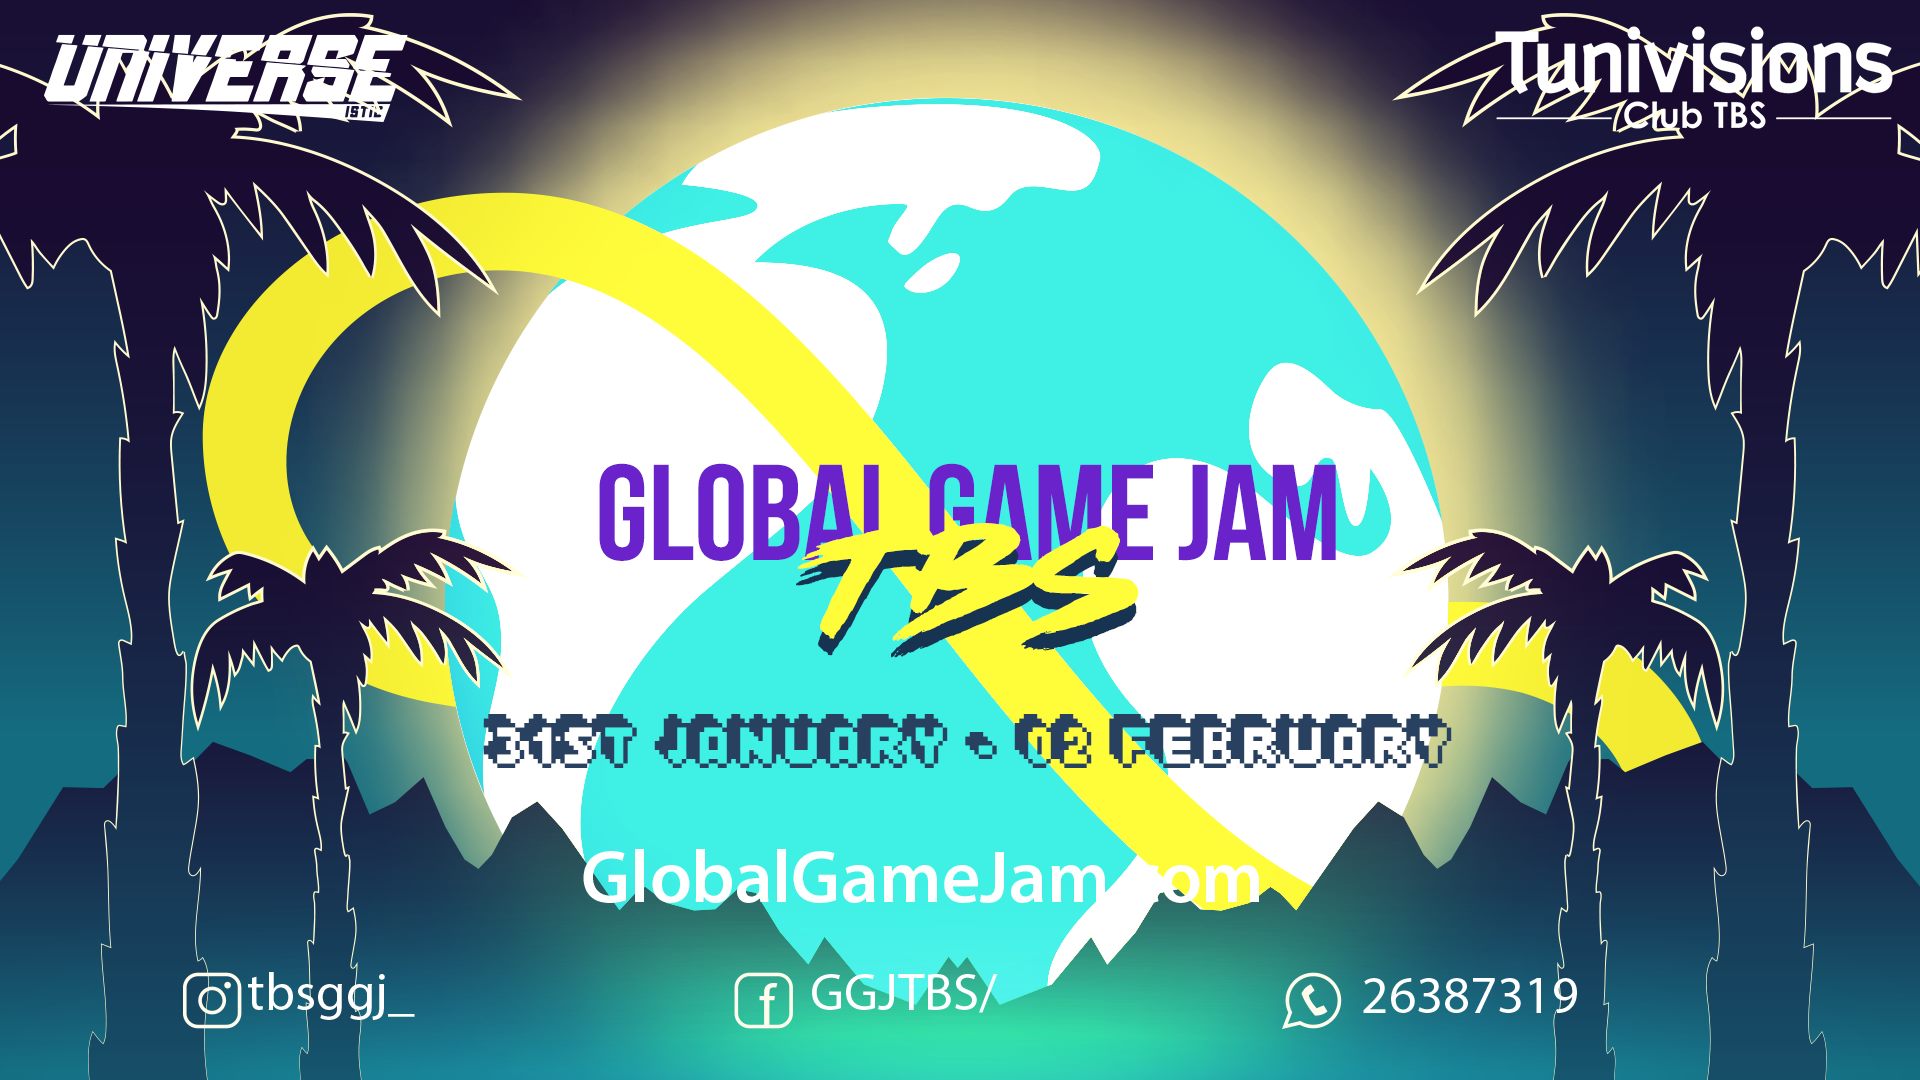 Global Game Jam 2020 in Tunisia